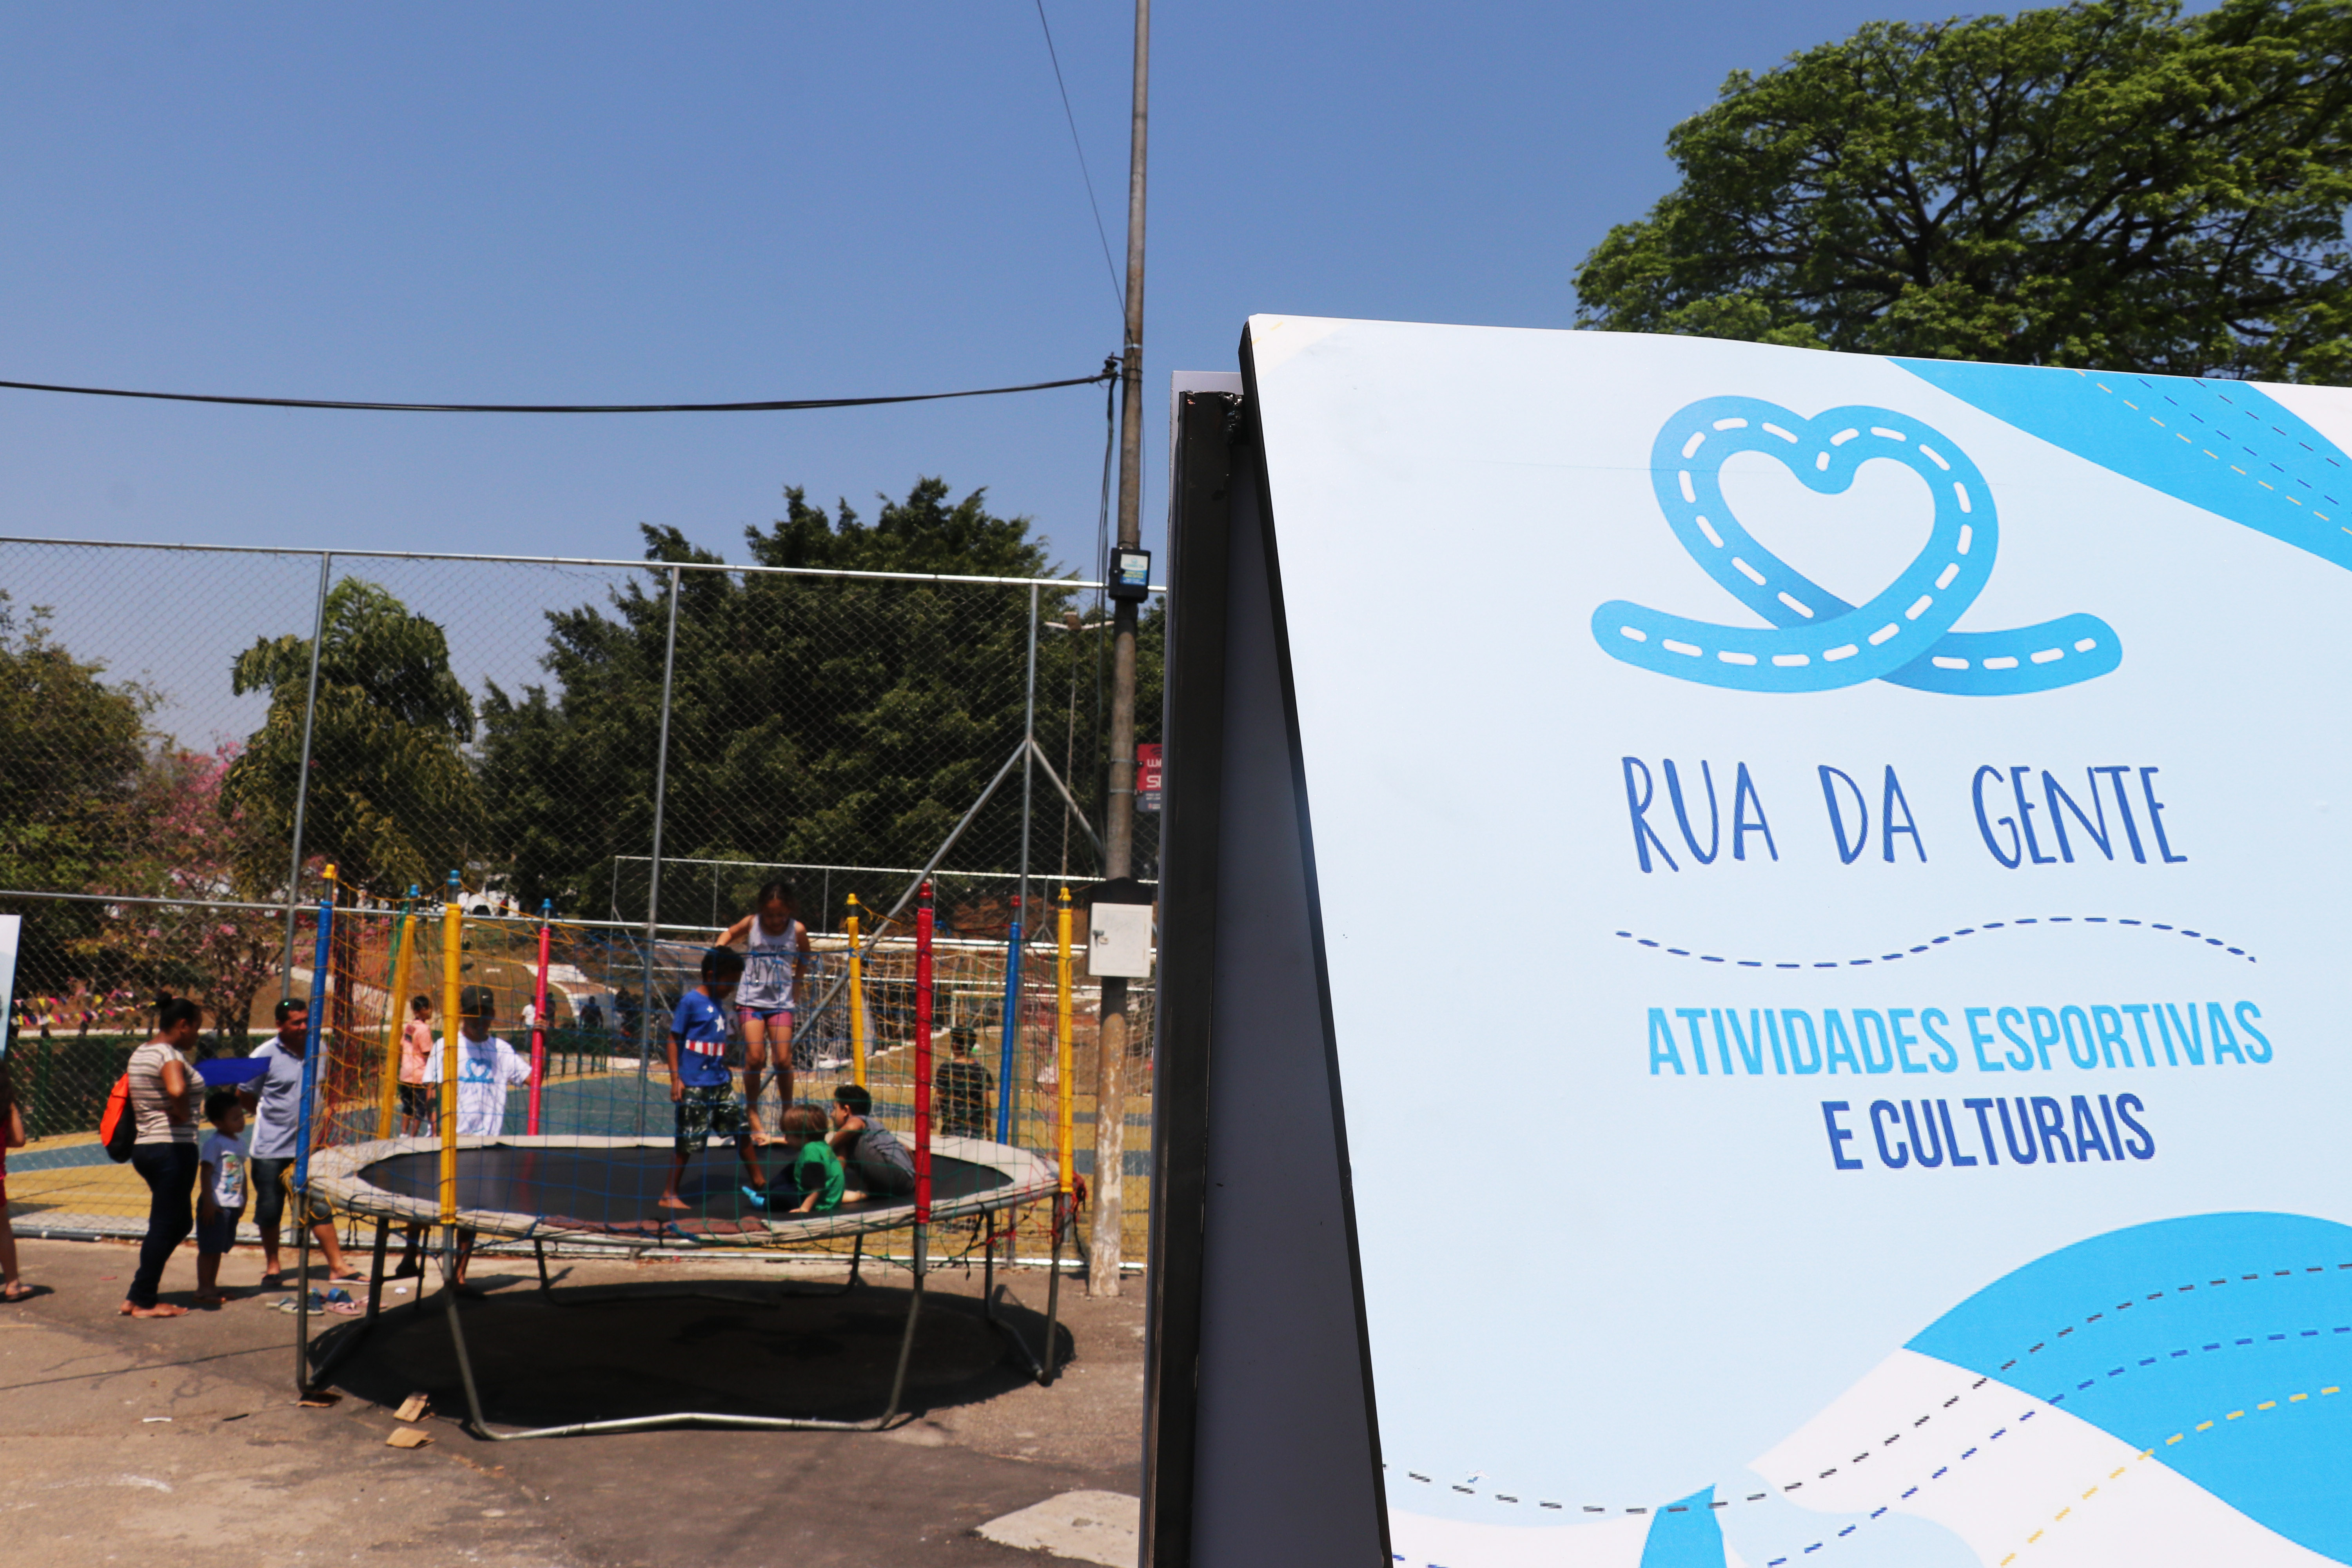 Placa com o logo do Rua da Gente e texto escrito "atividades esportivas e culturais" em primeiro plano. Ao fundo, crianças brincam em um pula-pula.